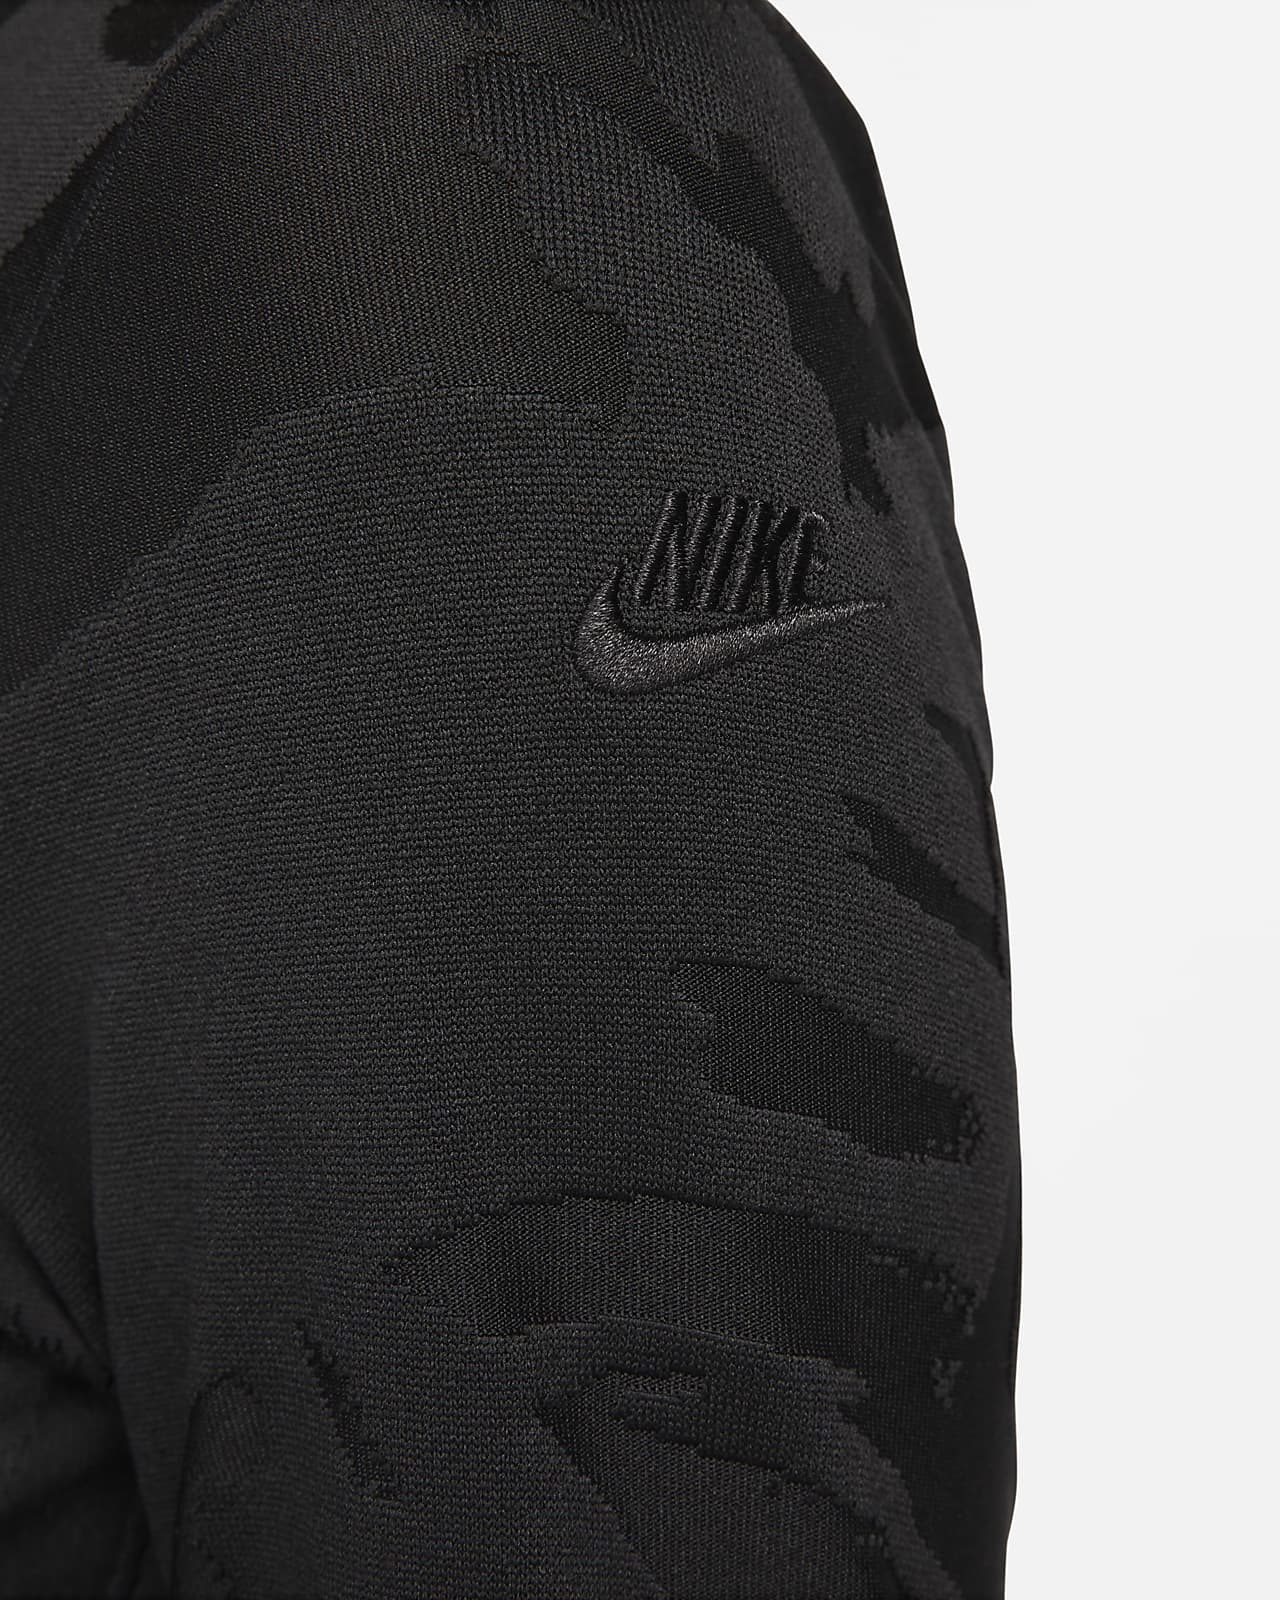 Nike, Sportswear Tech Pack Jacket Womens, Black/Black